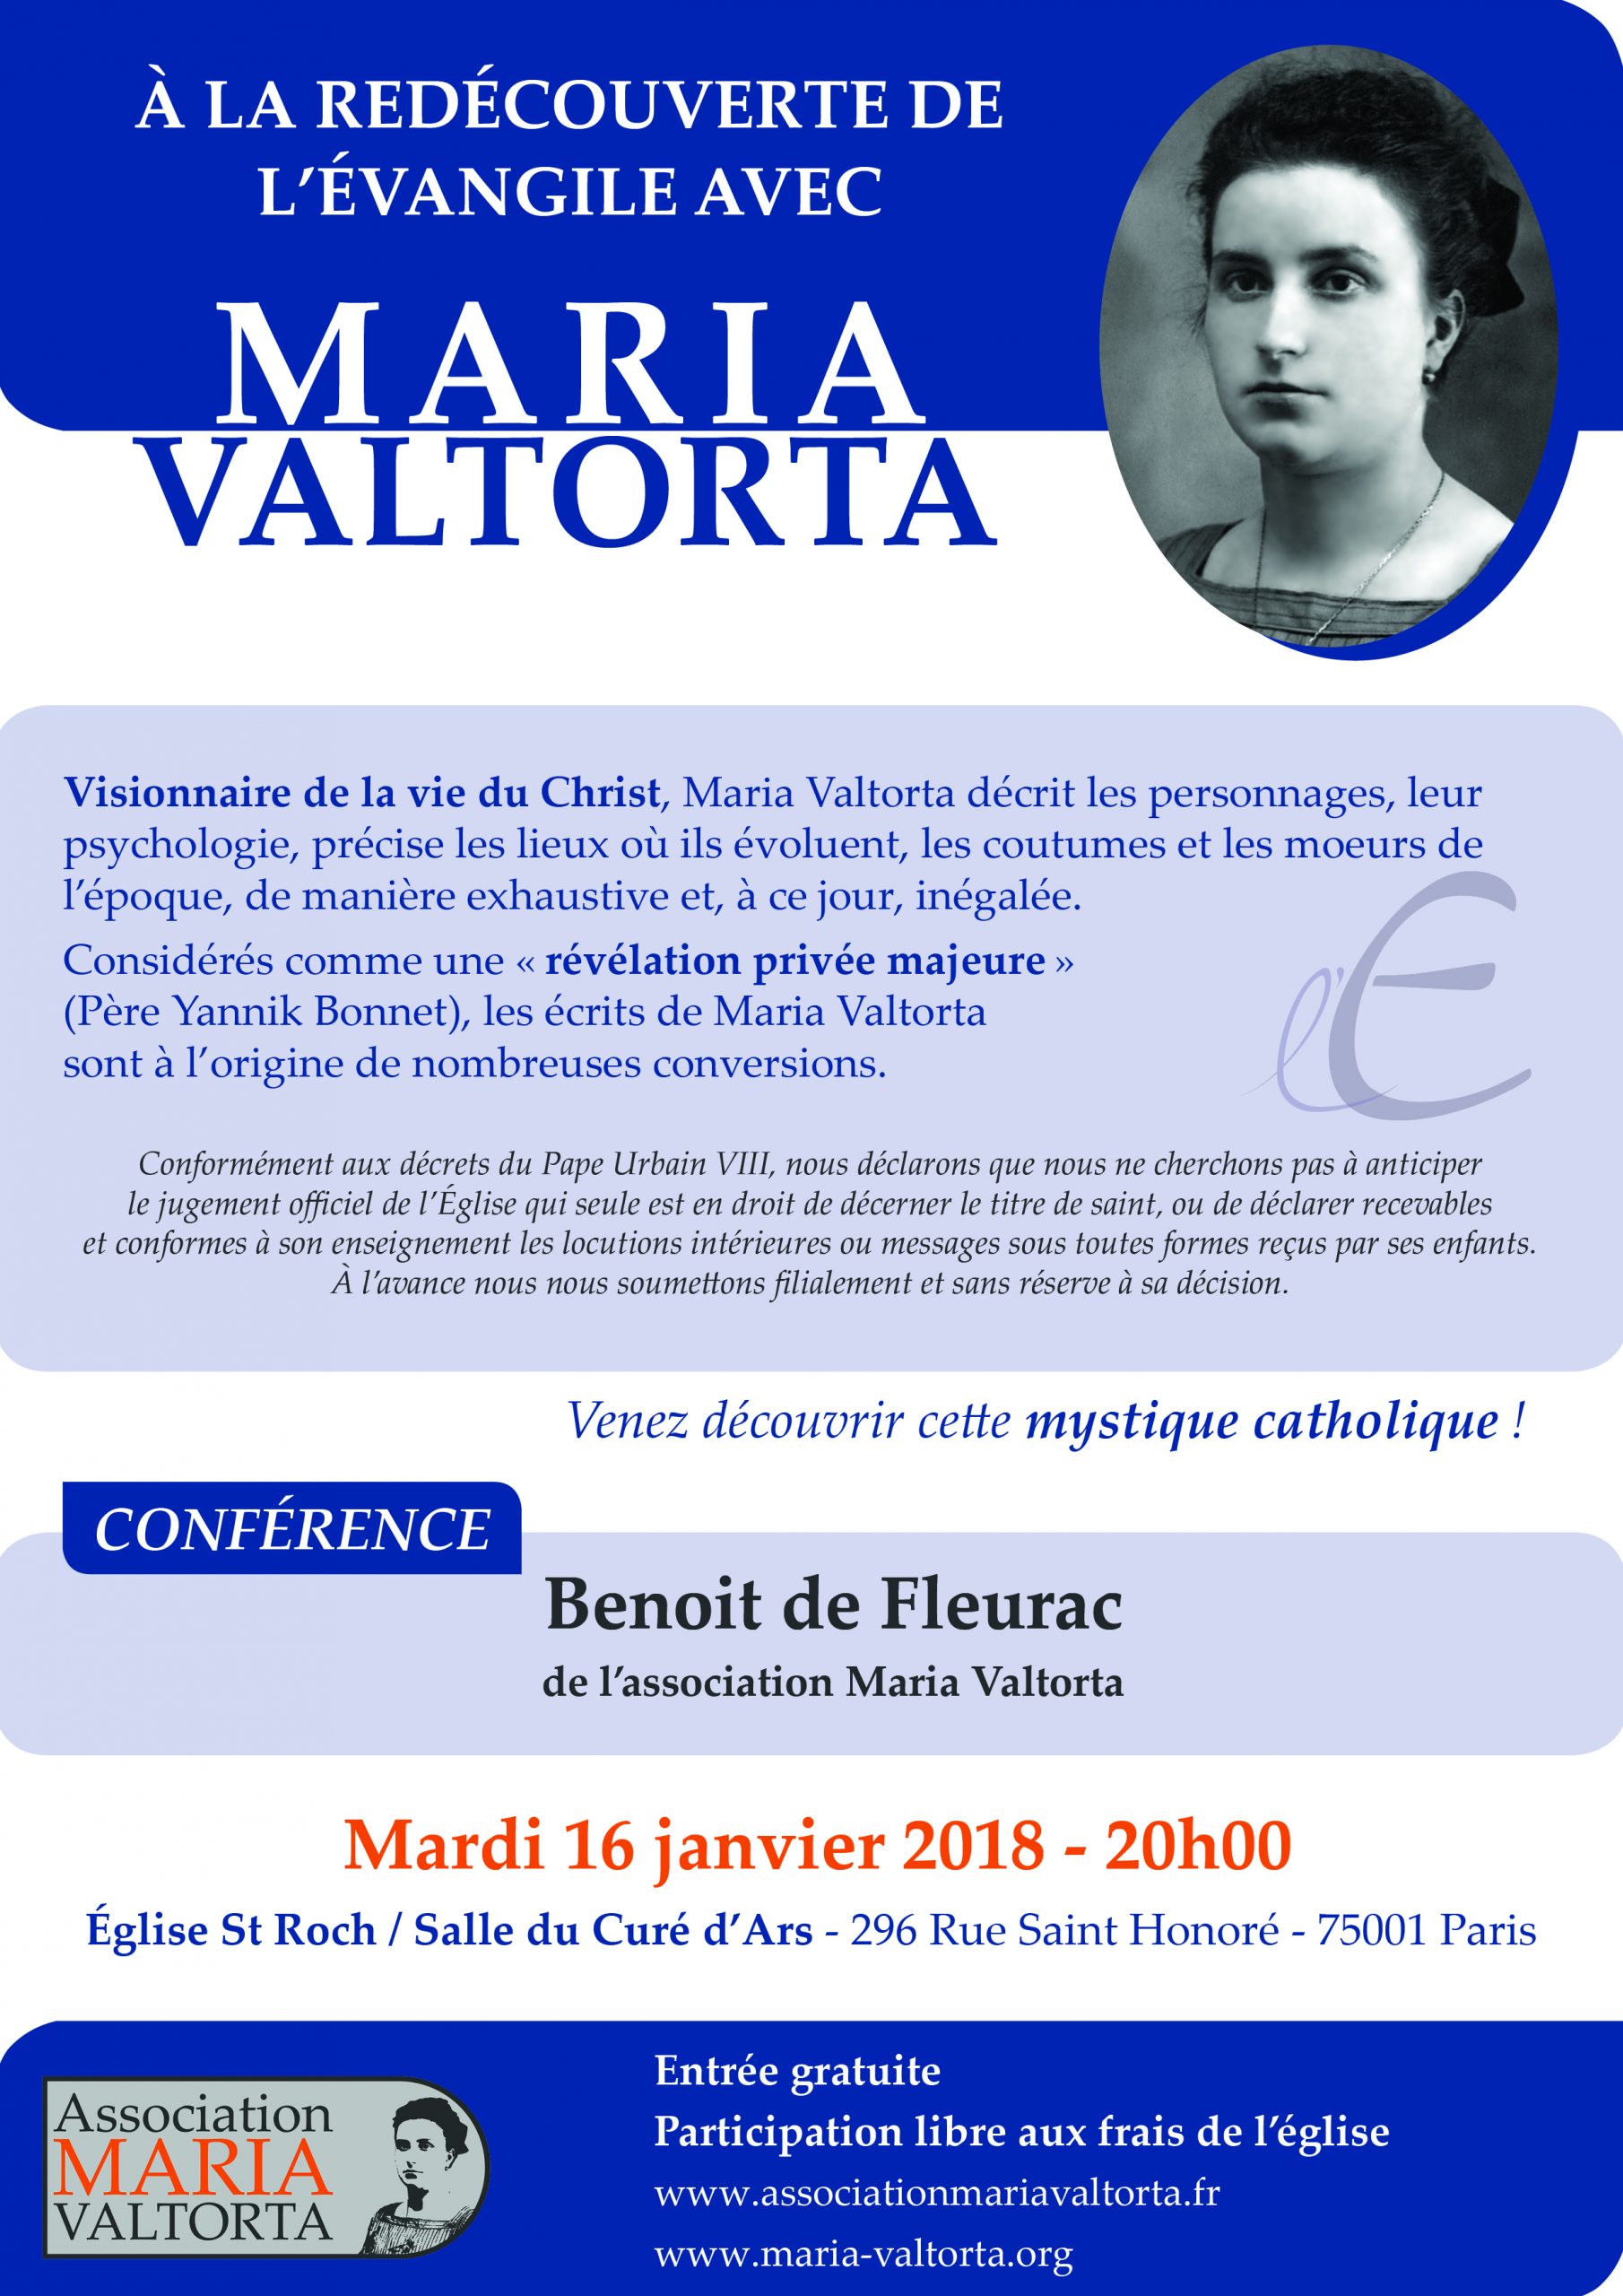 Conférence sur Maria Valtorta à Paris le 16 janvier 2018